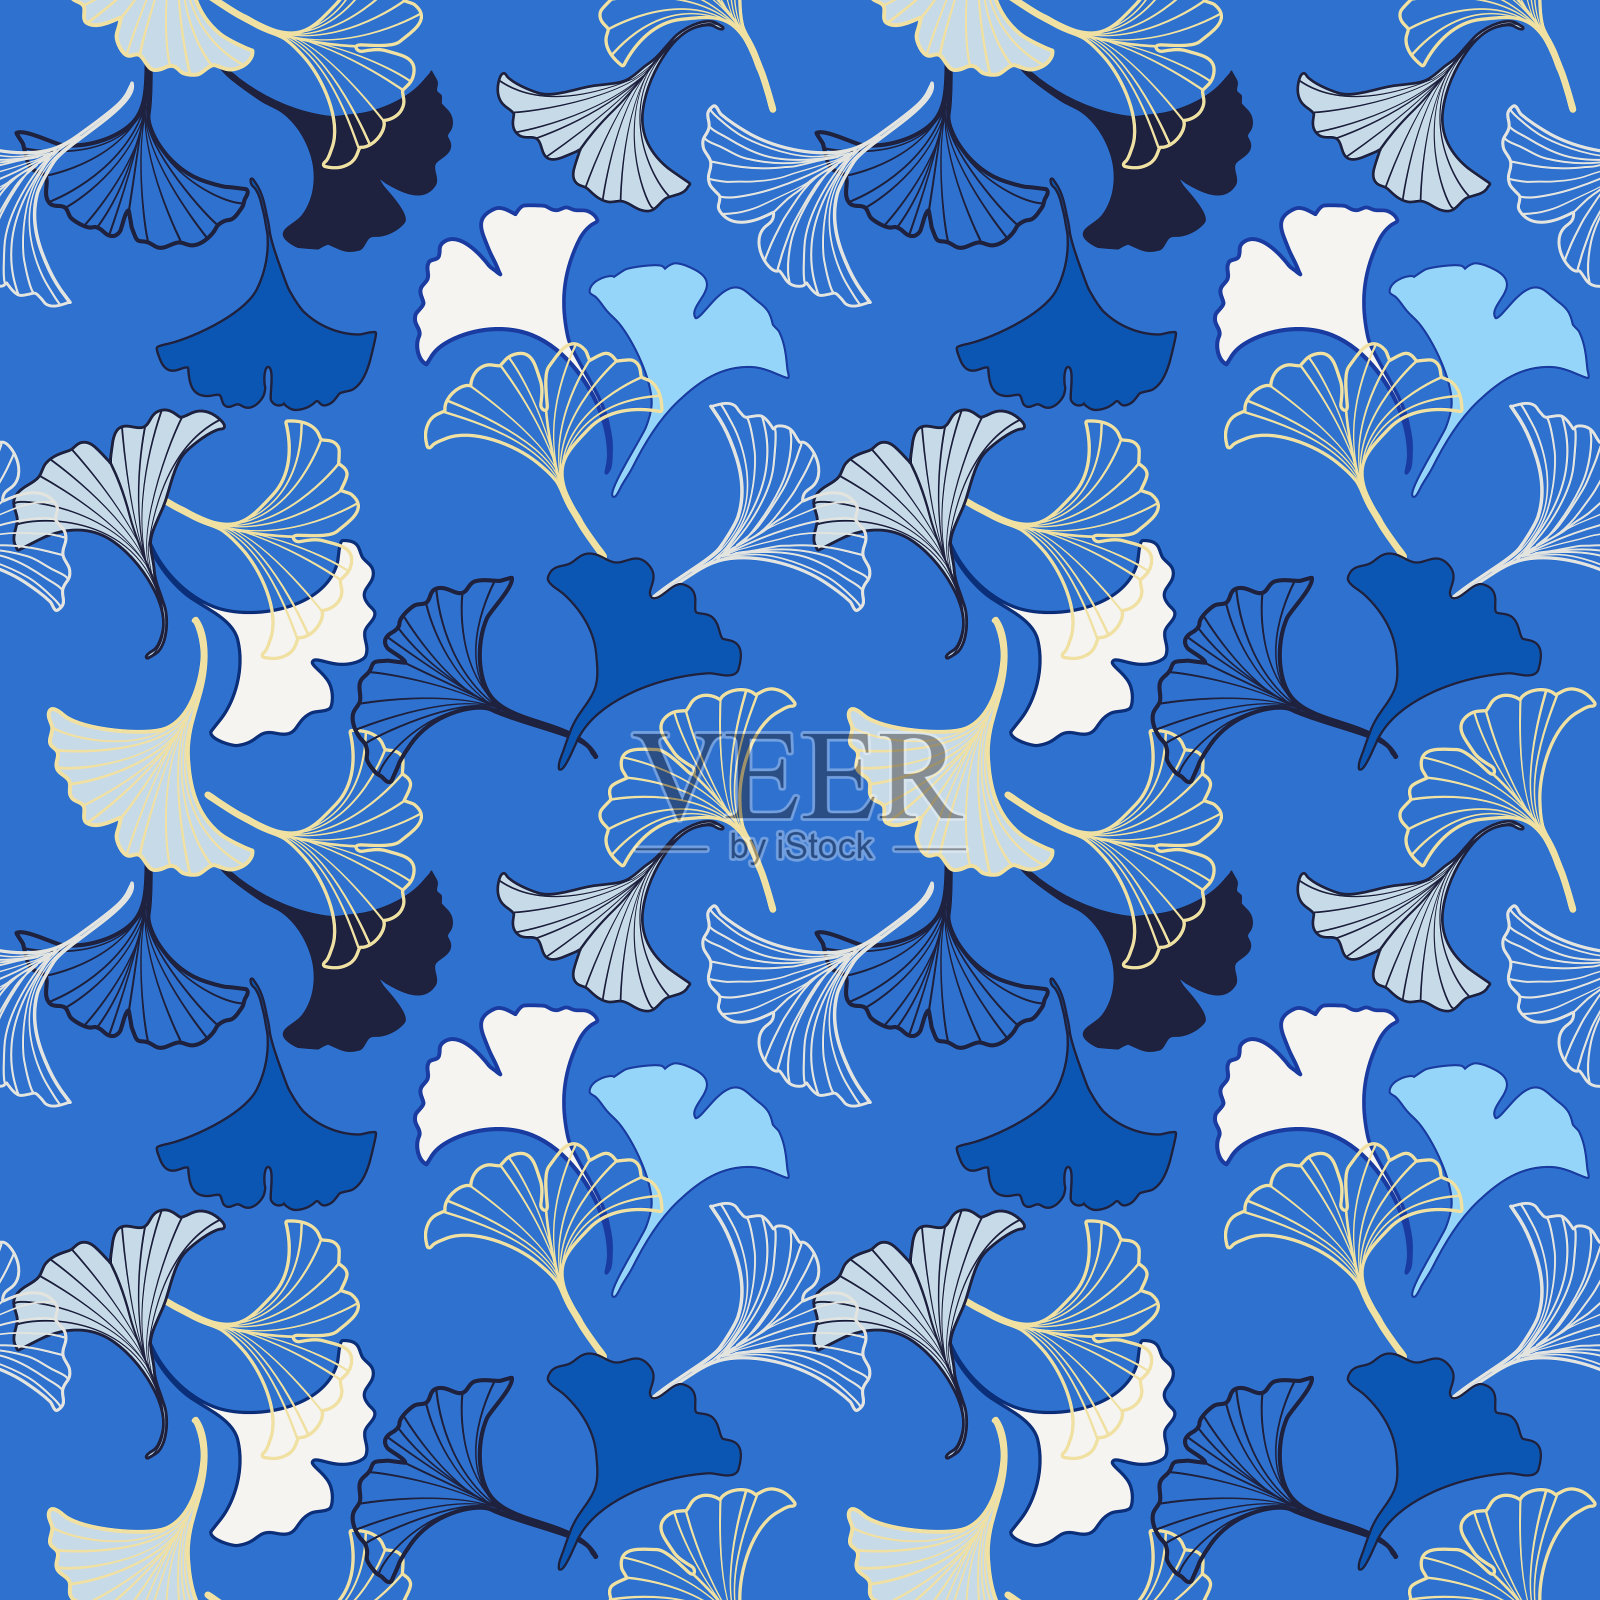 矢量无缝图案与蓝色和白色银杏叶飘落，插图抽象秋叶绘制在蓝色背景时装面料纺织品印刷，墙纸和包装纸插画图片素材